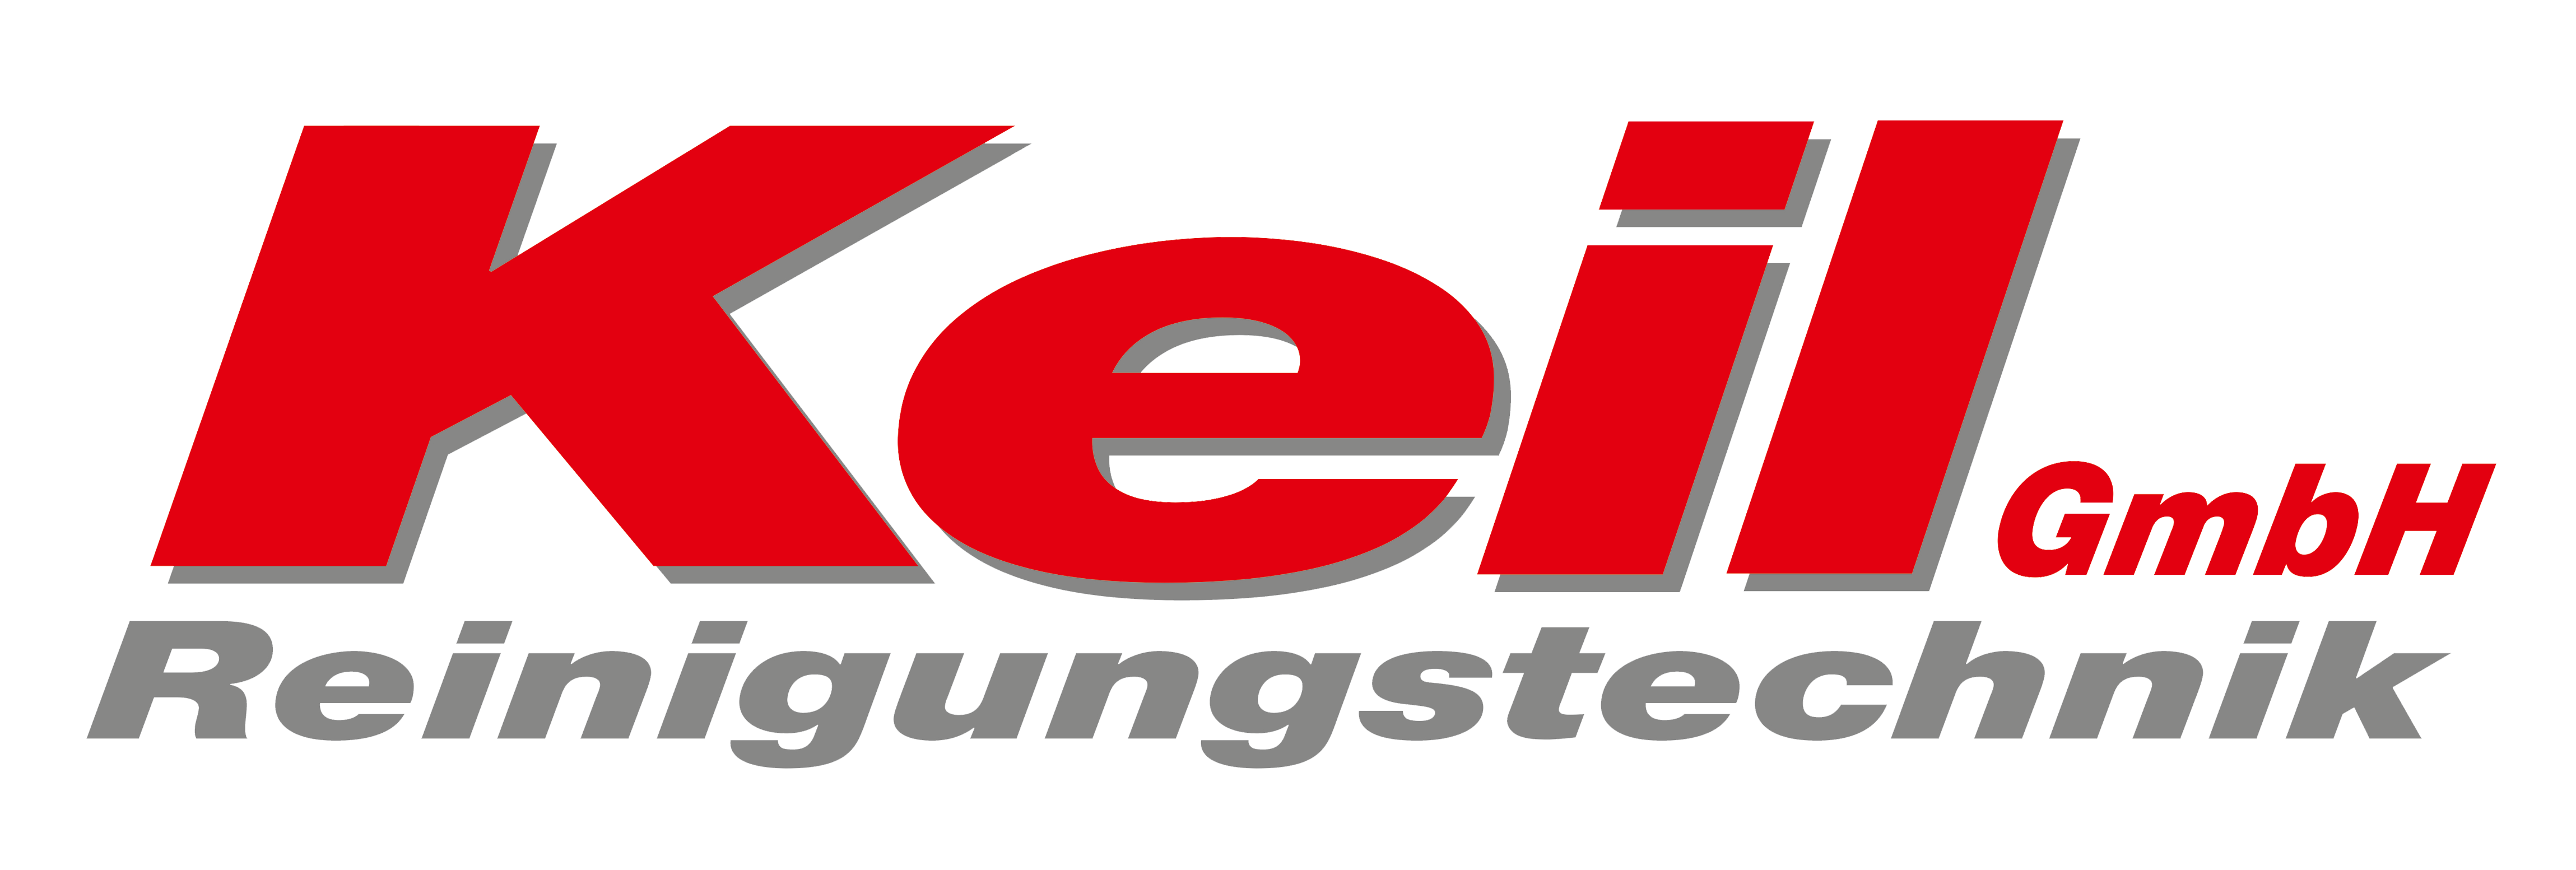 Keil GmbH – Reinigungstechnik